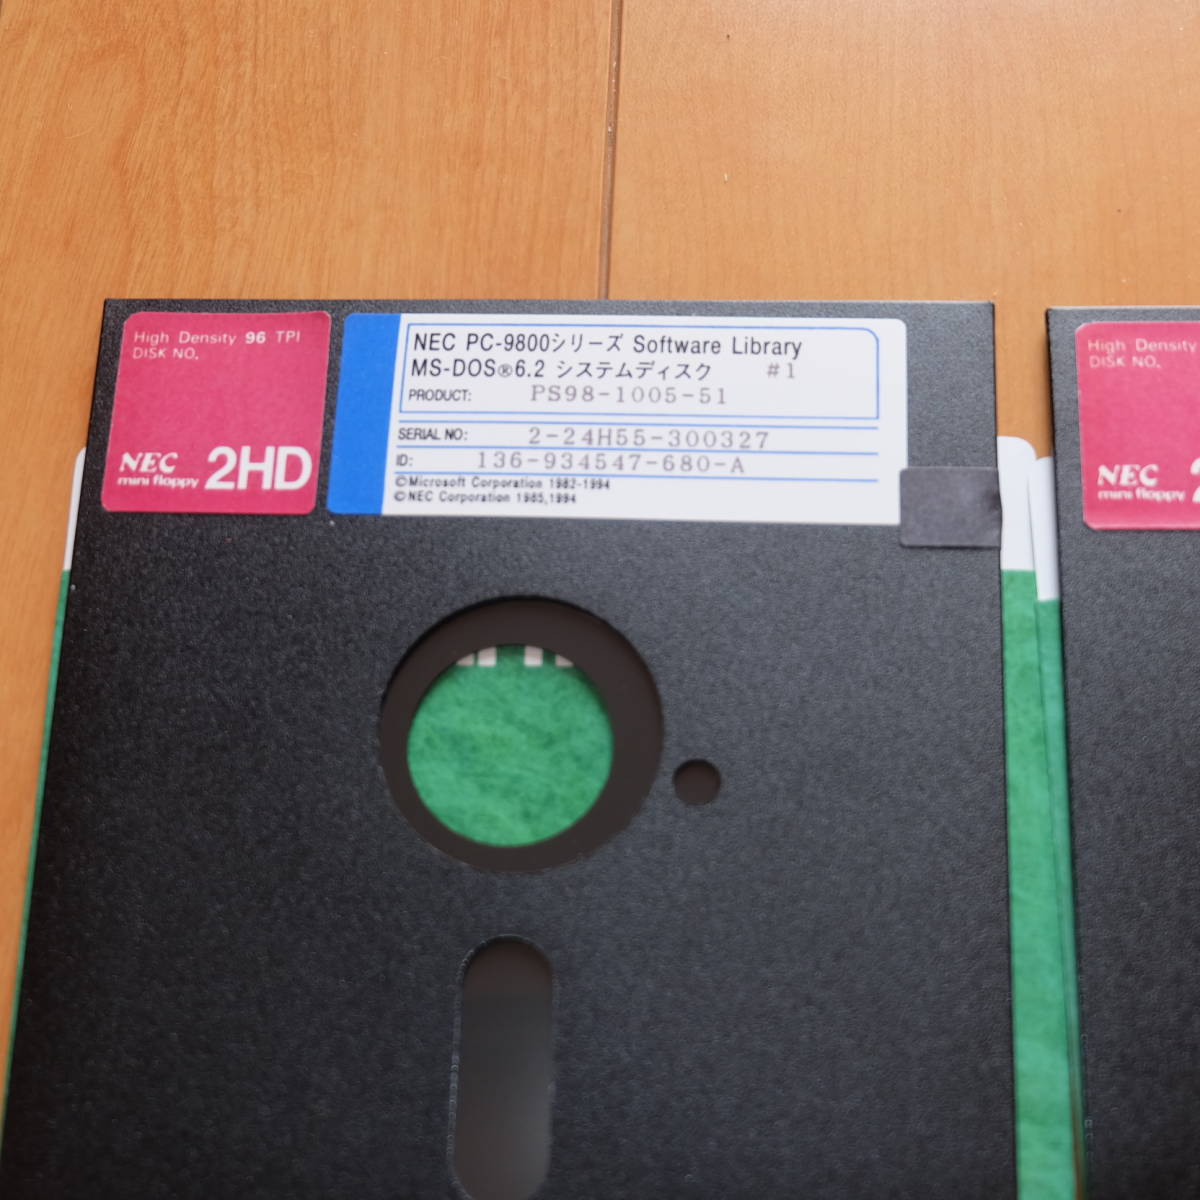 み 2HD 5インチディスク NEC PC-9800シリーズ MS-DOS6.2 システムディスク 全8枚 PS98-1004-51 OS